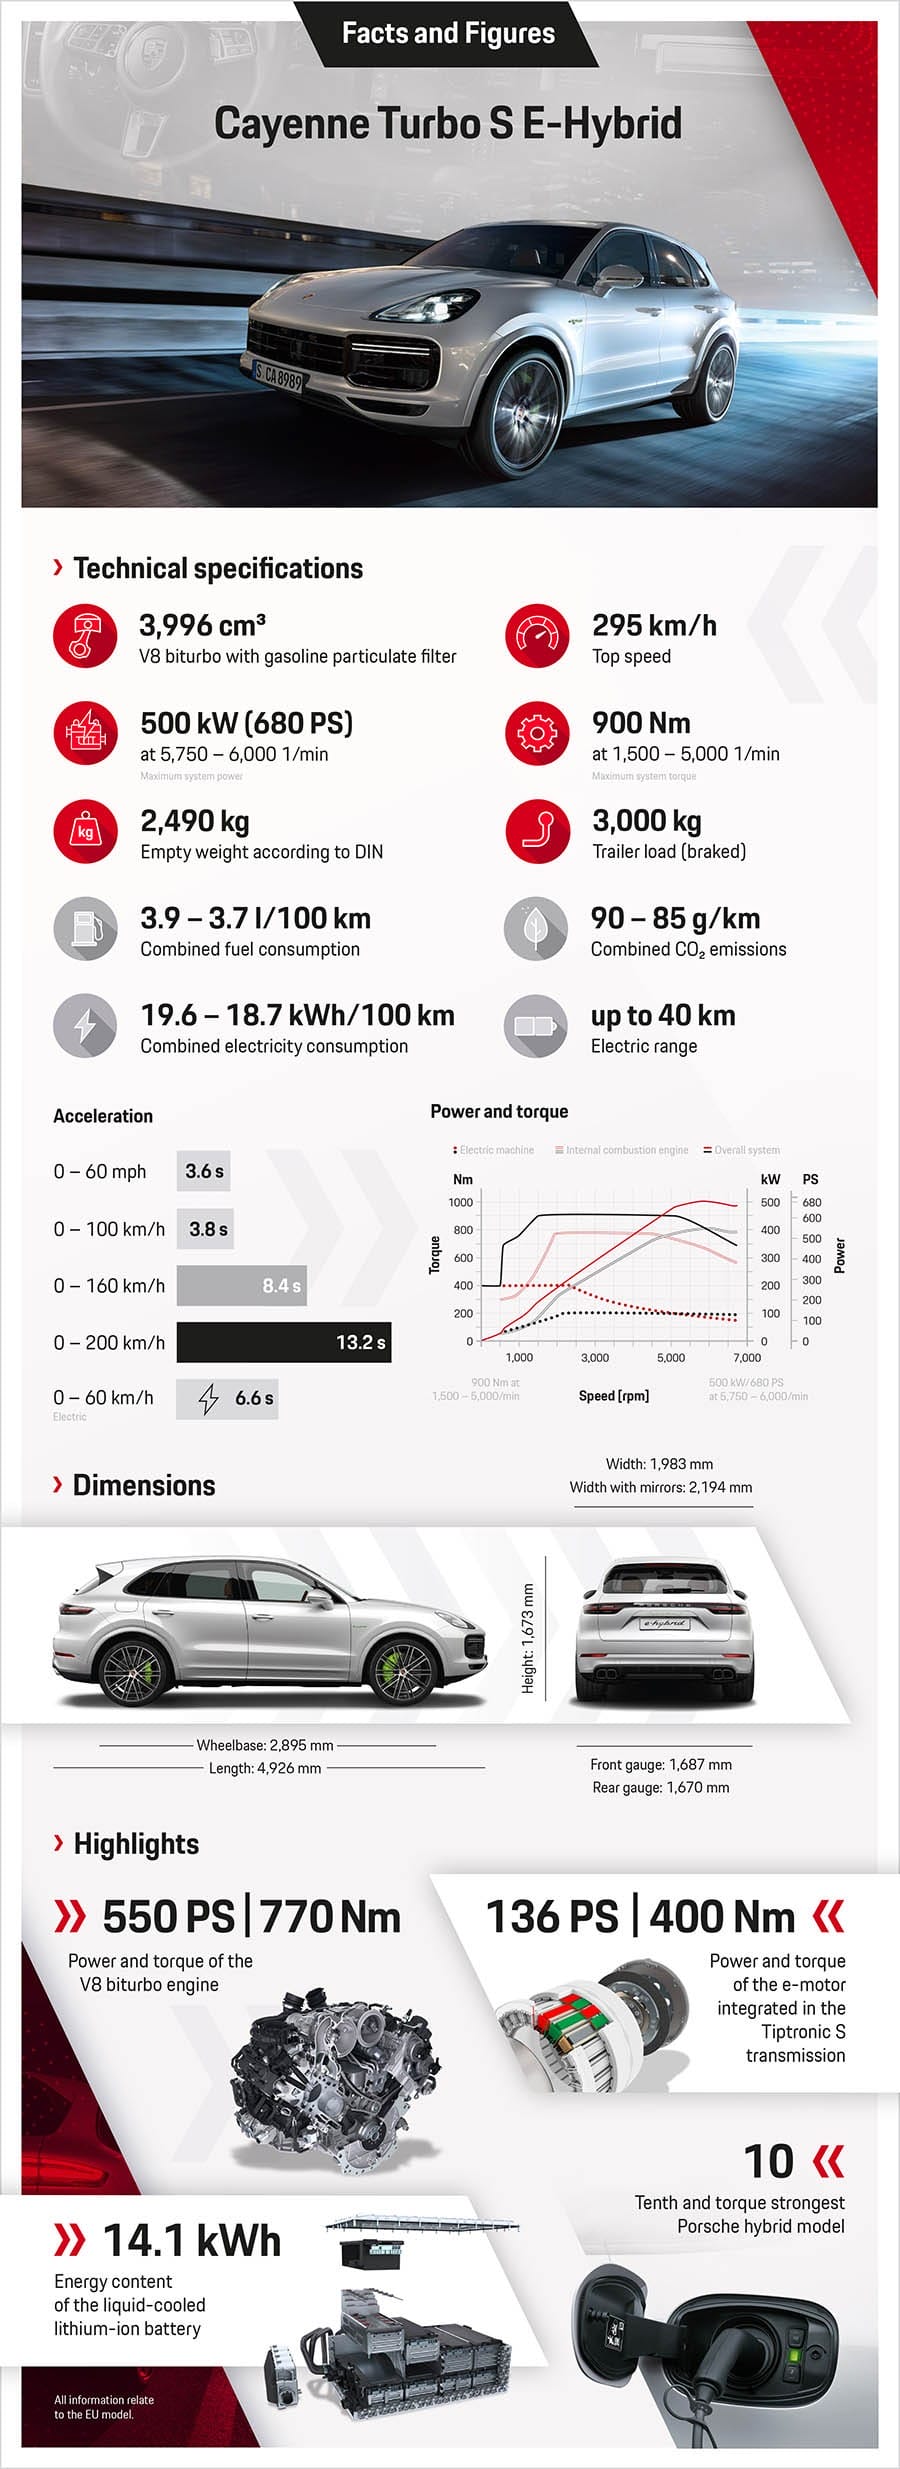 Ra mắt “quân đầu đàn” Porsche Cayenne Turbo S E-Hybrid 2020 cực mạnh ảnh 9